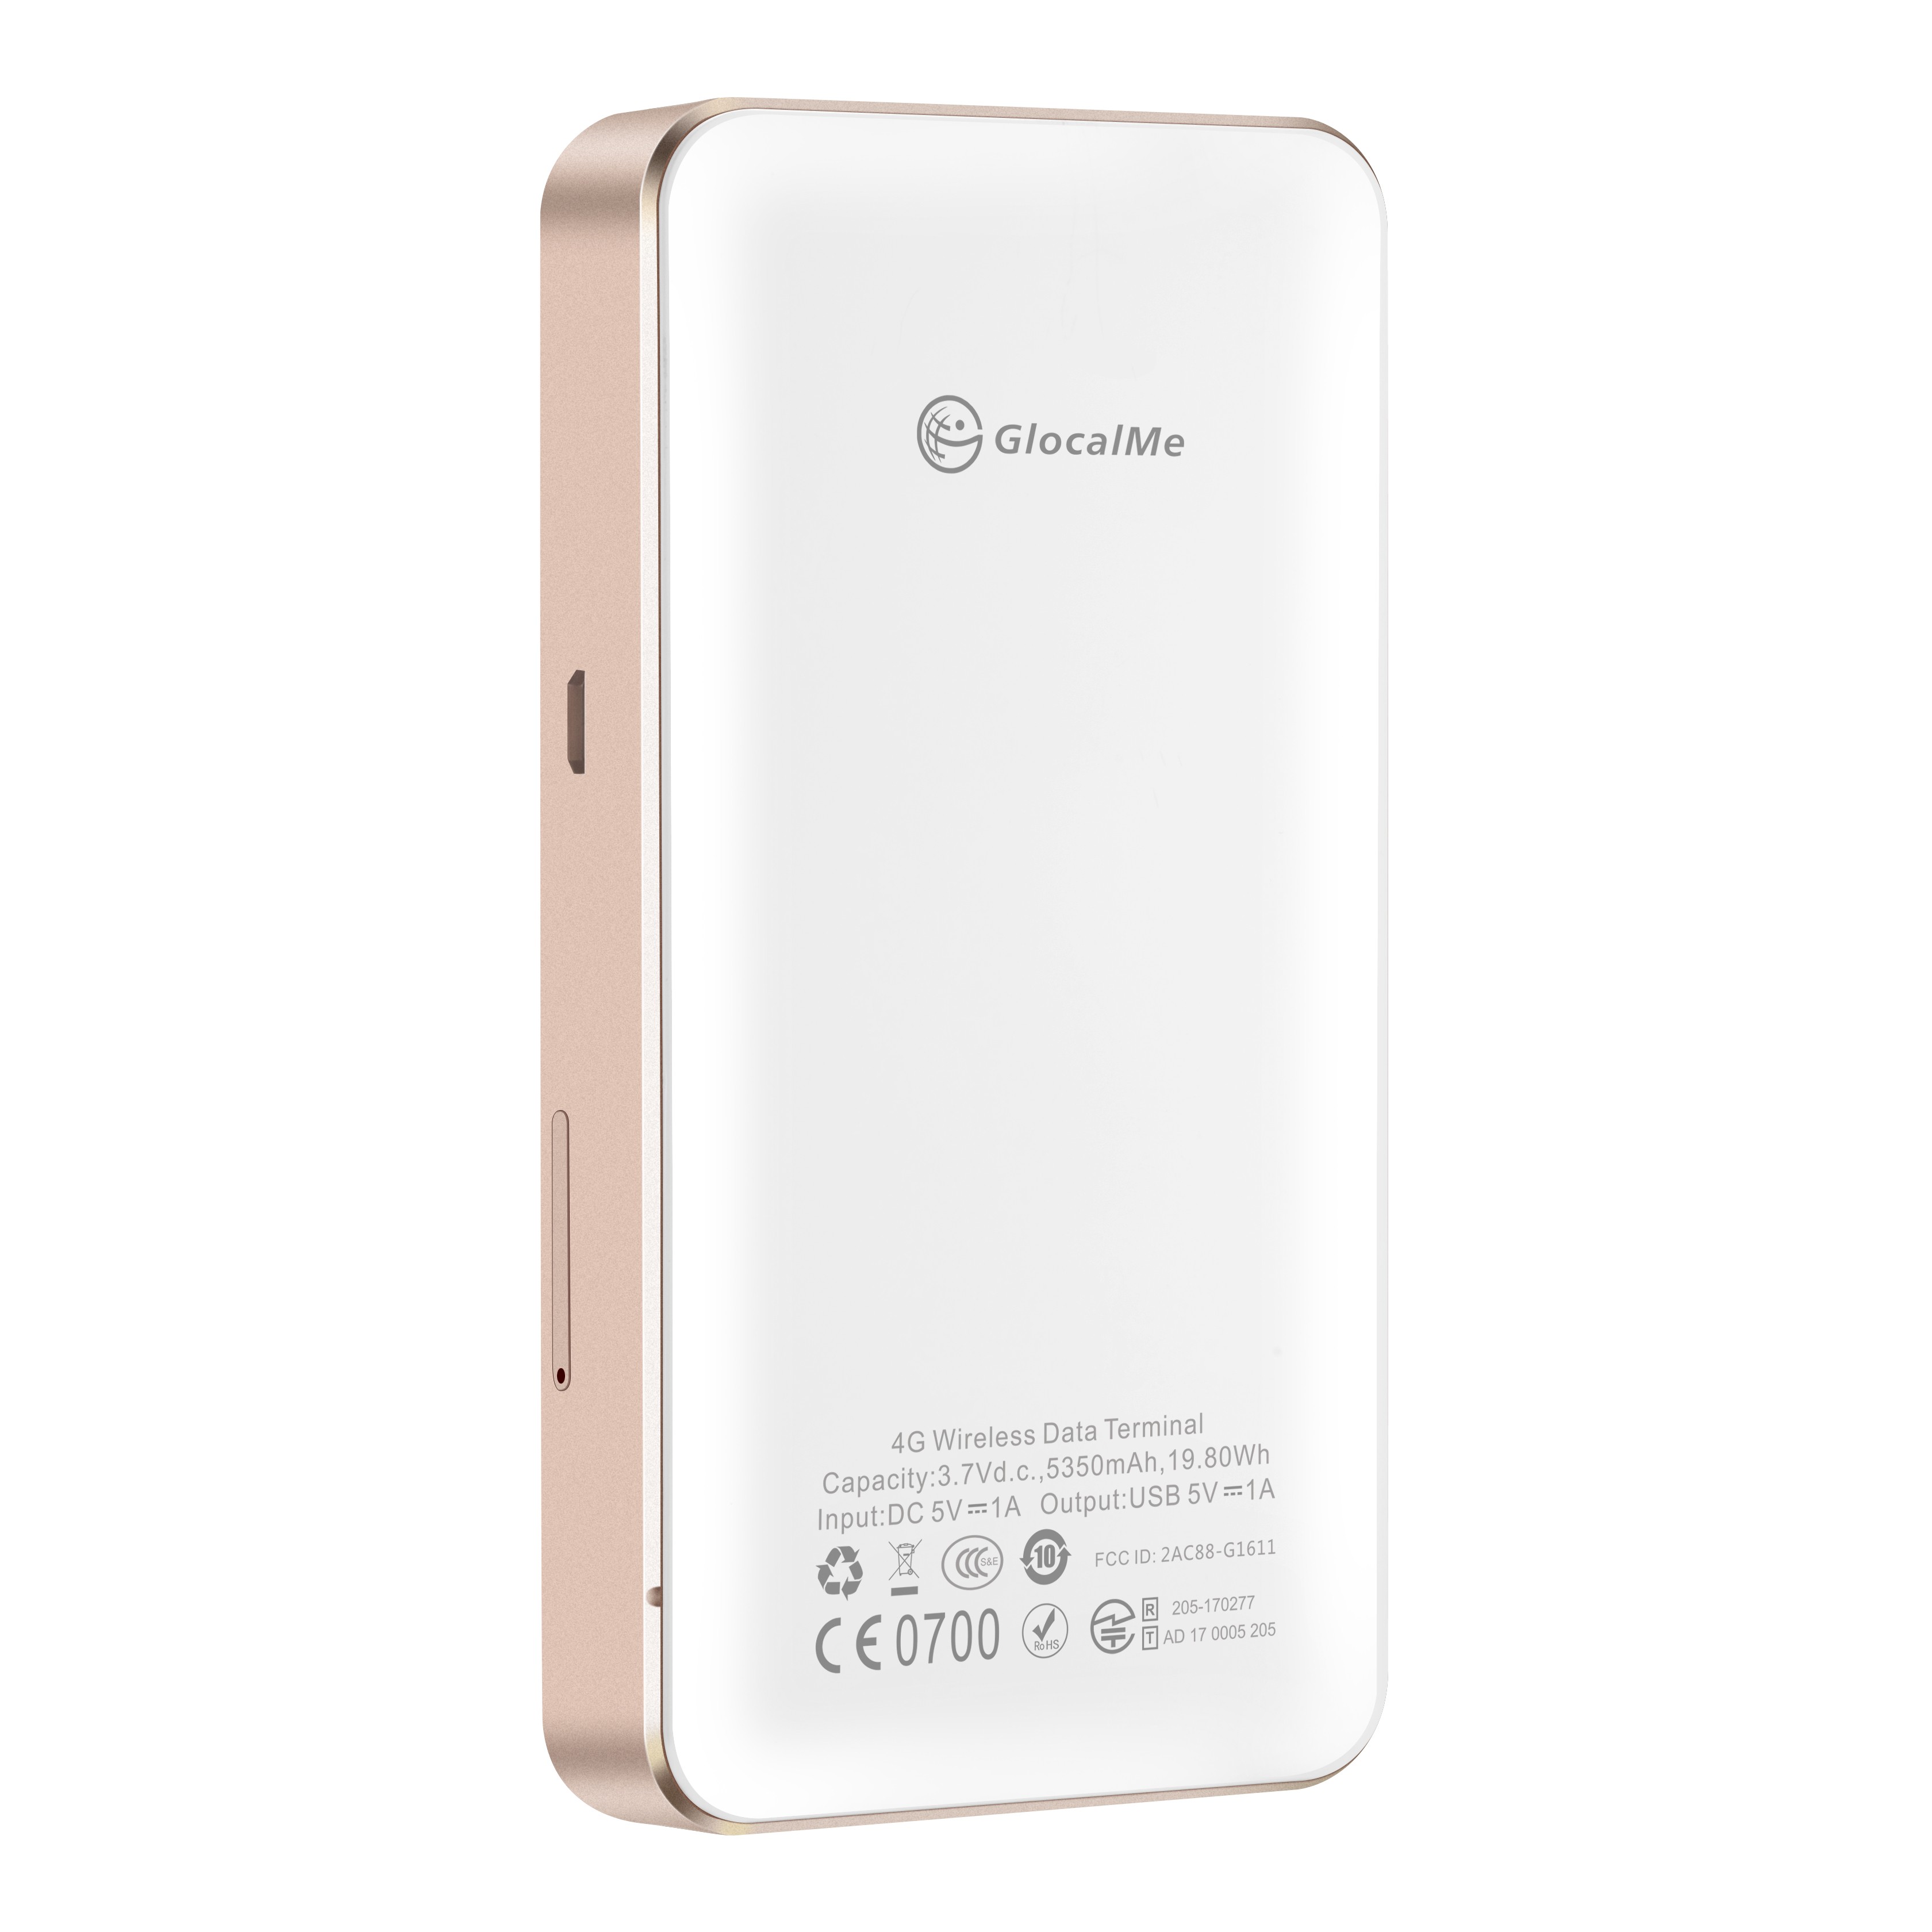 GlocalMe 4G WiFi Router Portable Hotspot 3g wifi router power bank with sim card